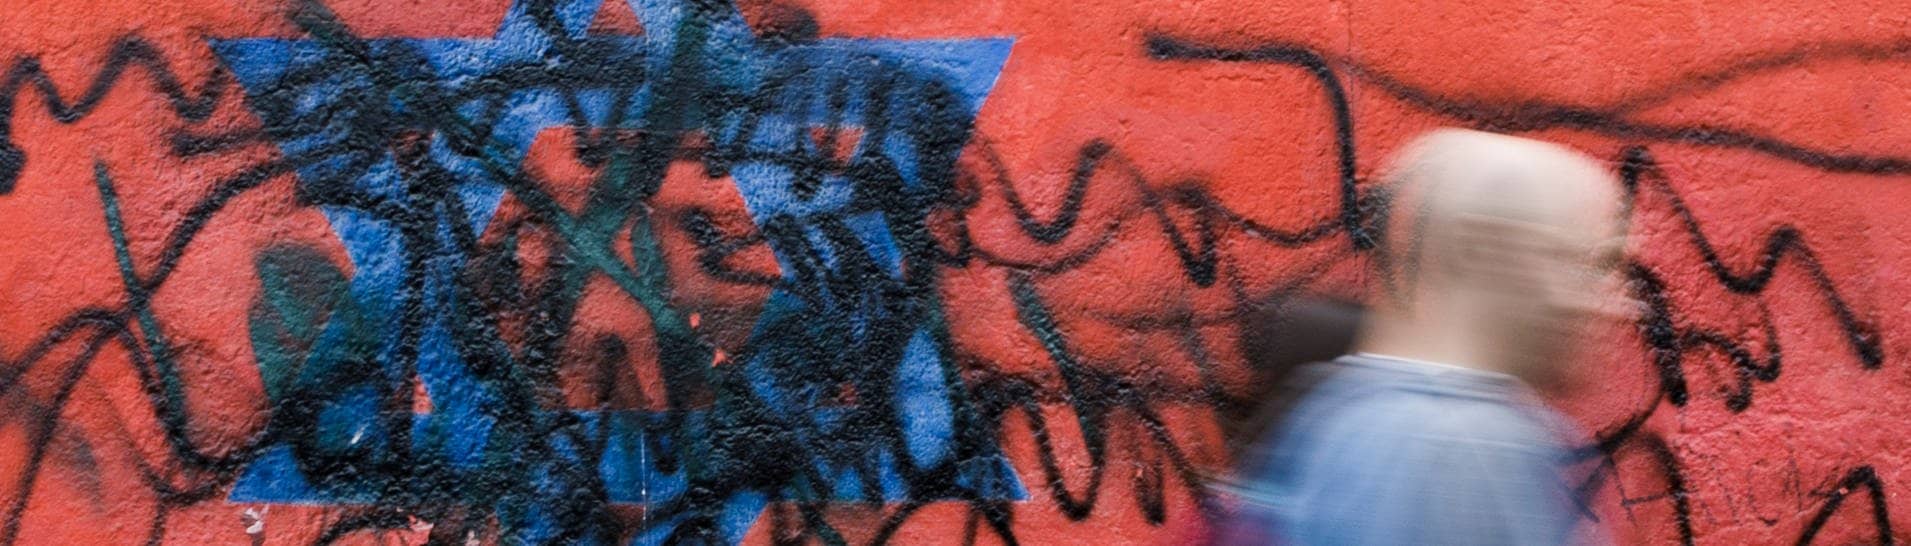 Berlin: Passanten gehen an dem zerstörten Wandbild des Künstlers Günther Schäfer an der East Side Gallery vorbei. Das Wandbild „Vaterland“, das die schwarz-rot-goldene Deutschlandfahne mit einem blauem Davidstern zeigt, wurde von Unbekannten mit schwarzen Graffitis beschmiert.